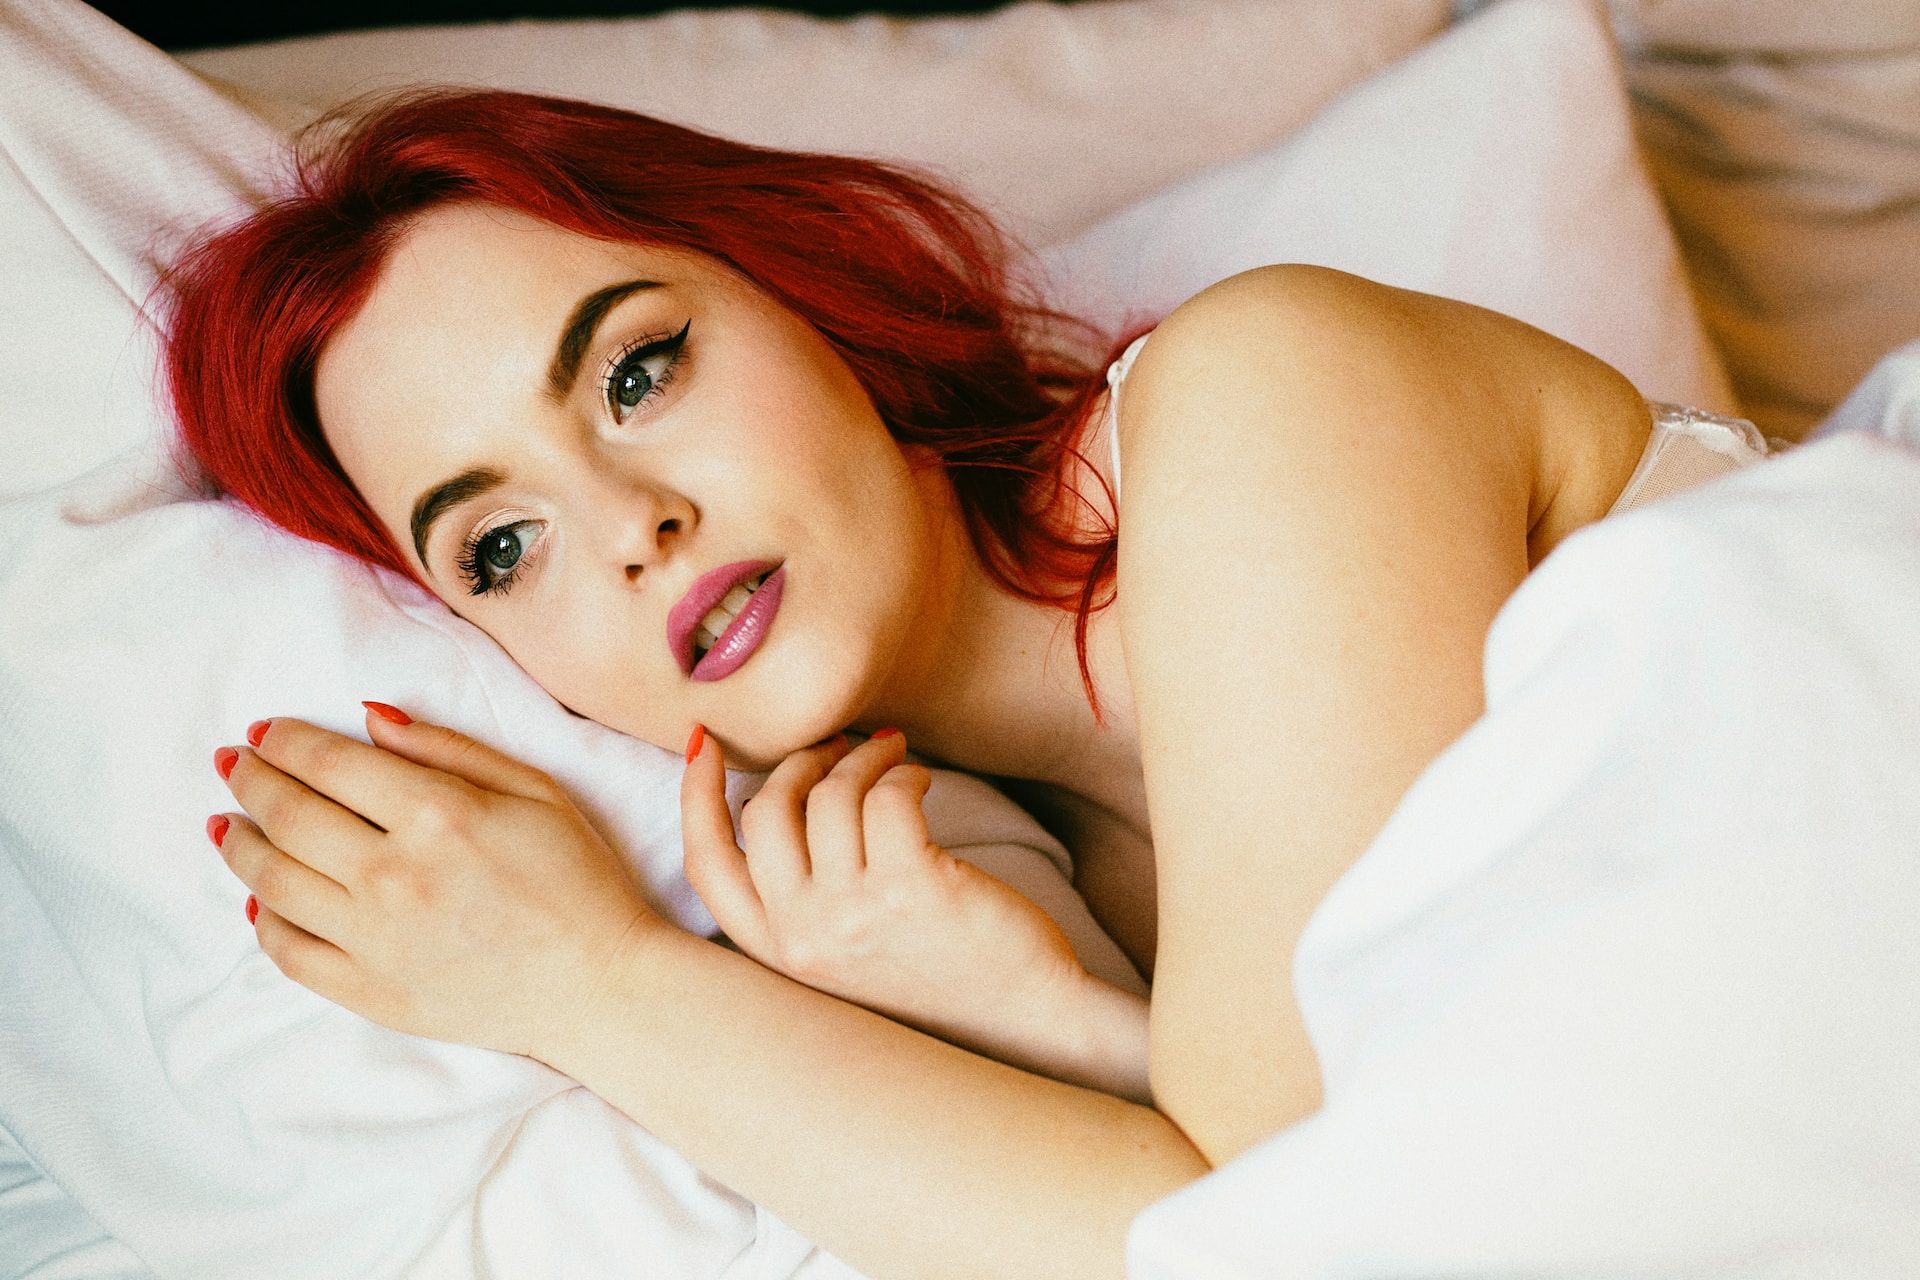 woman awake in bed